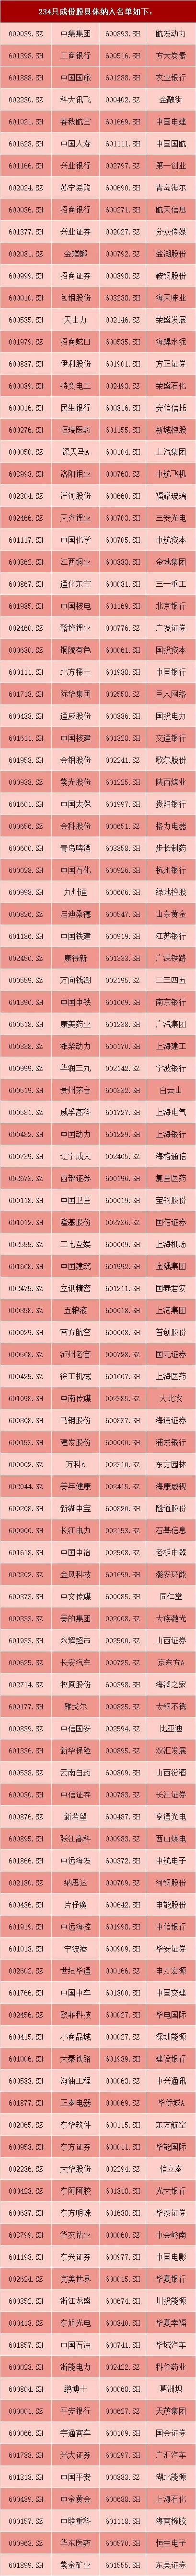 msci中国a股指数成分股名单1.jpg